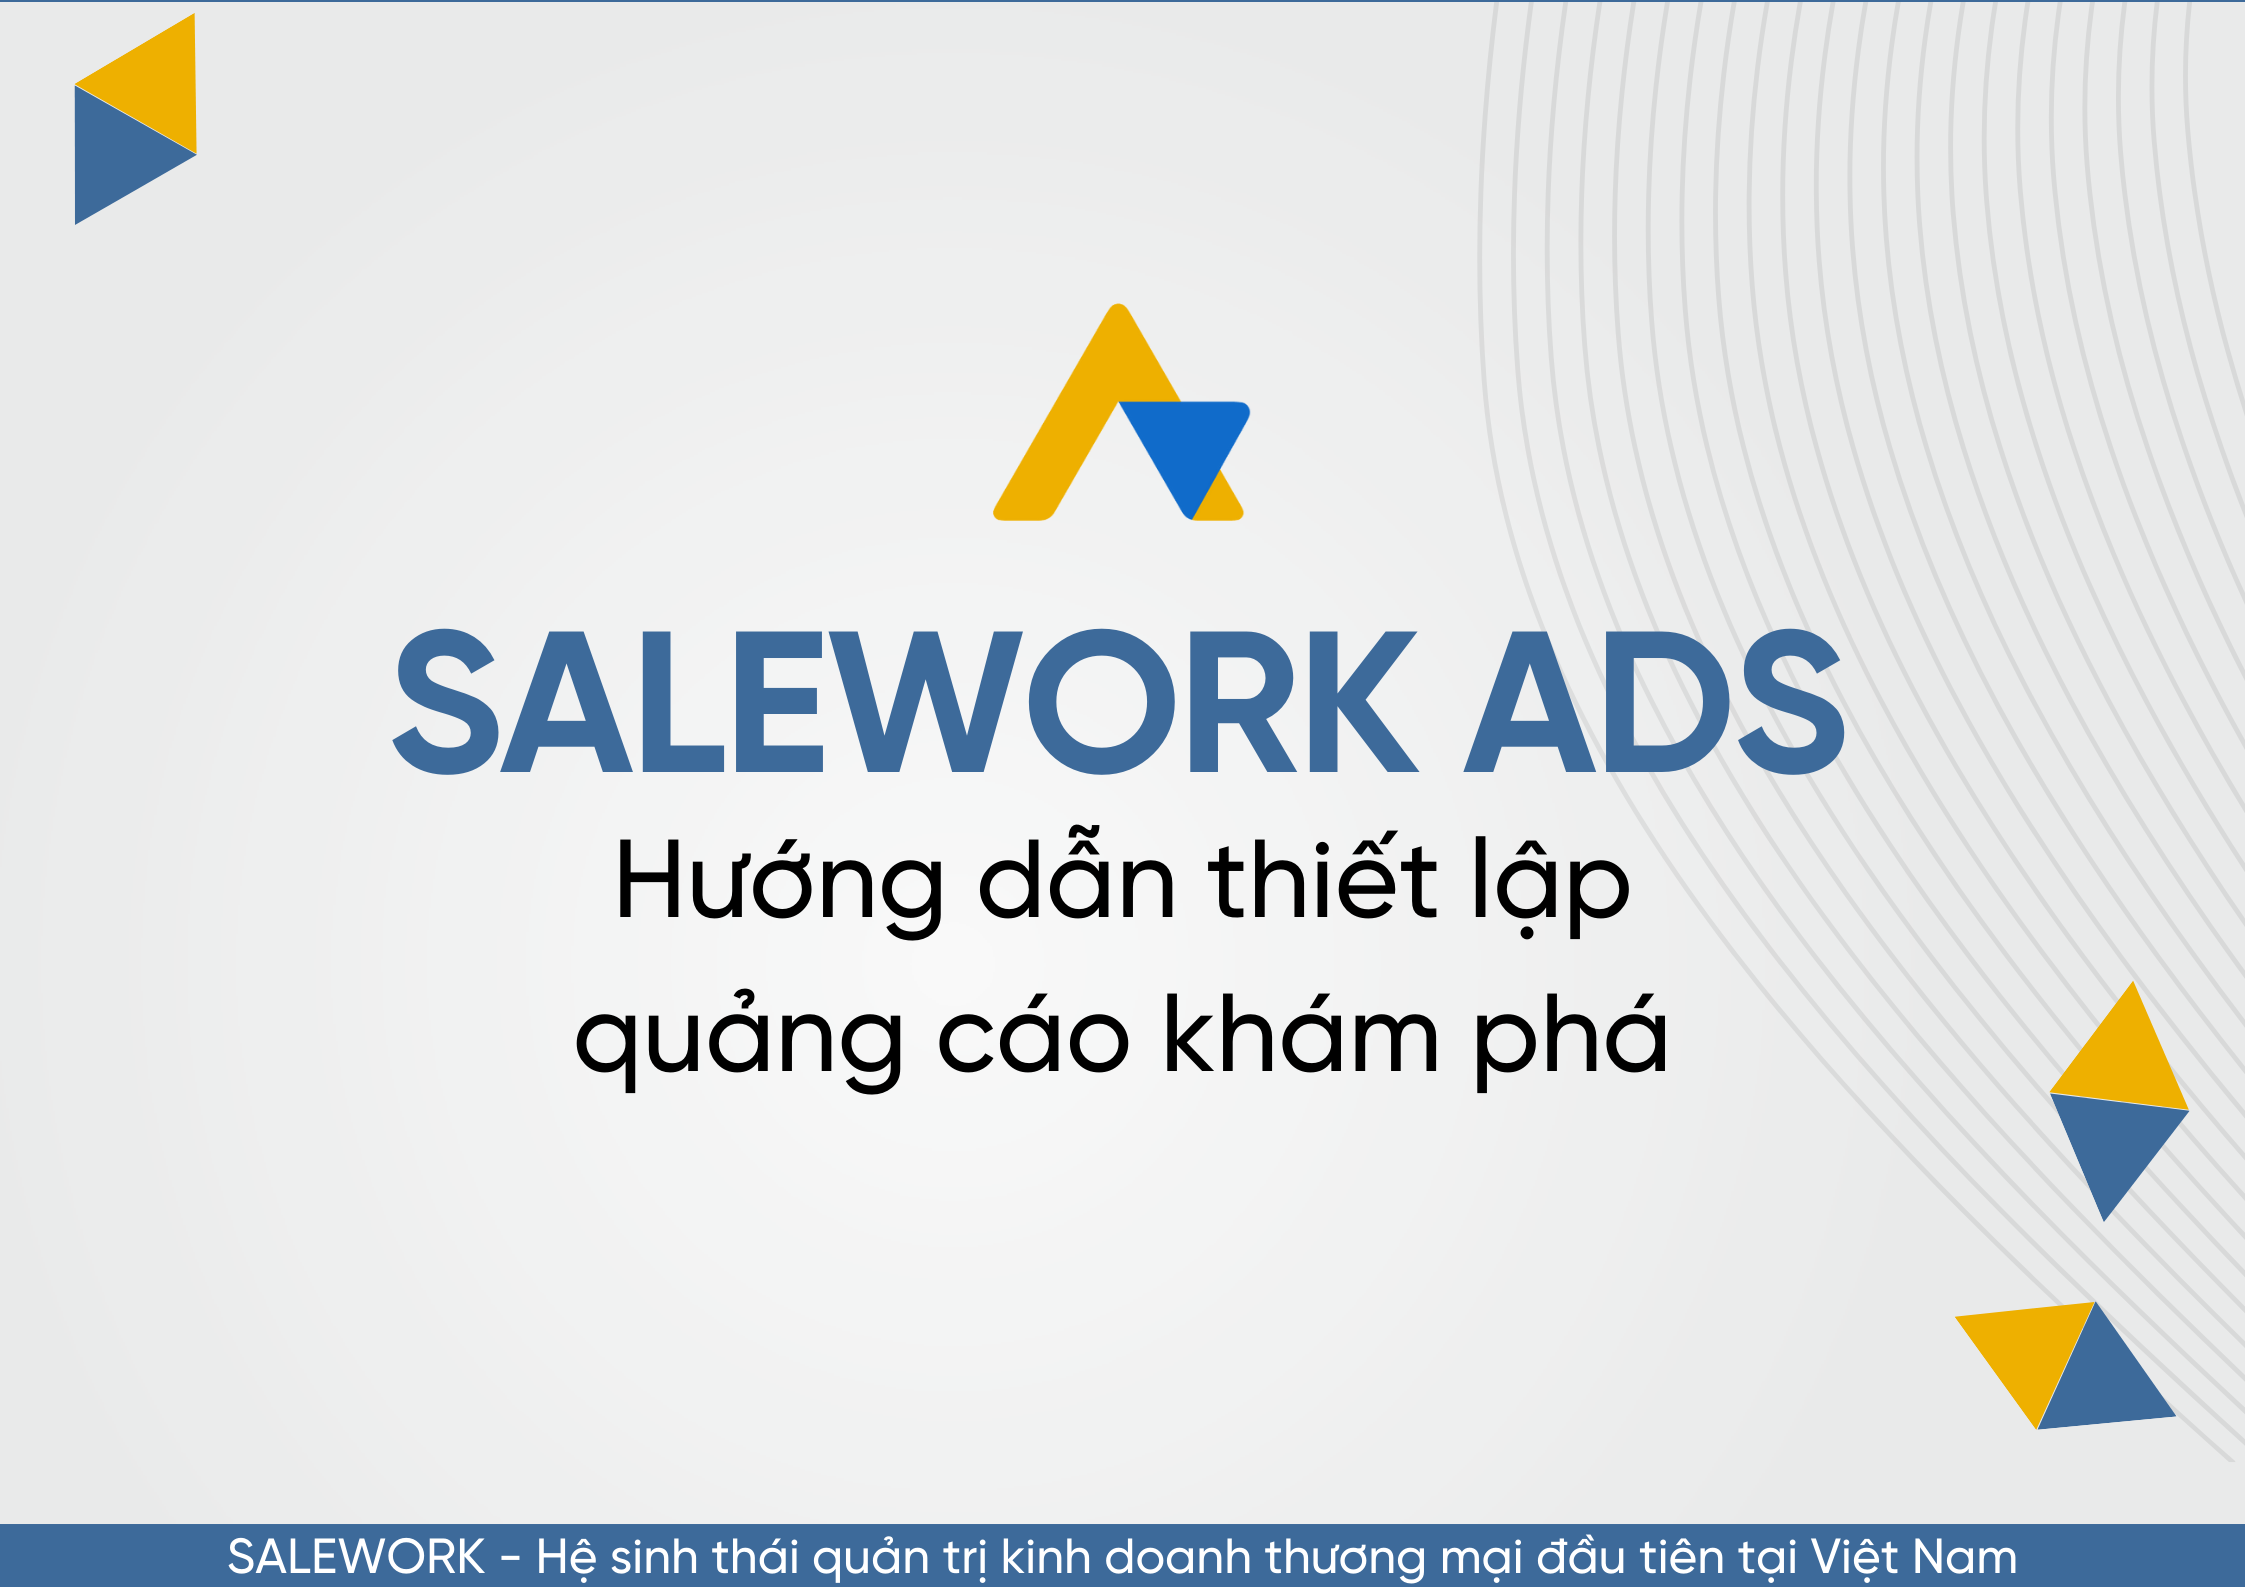 Hướng dẫn thiết lập quảng cáo khám phá tại Salework Ads - 51